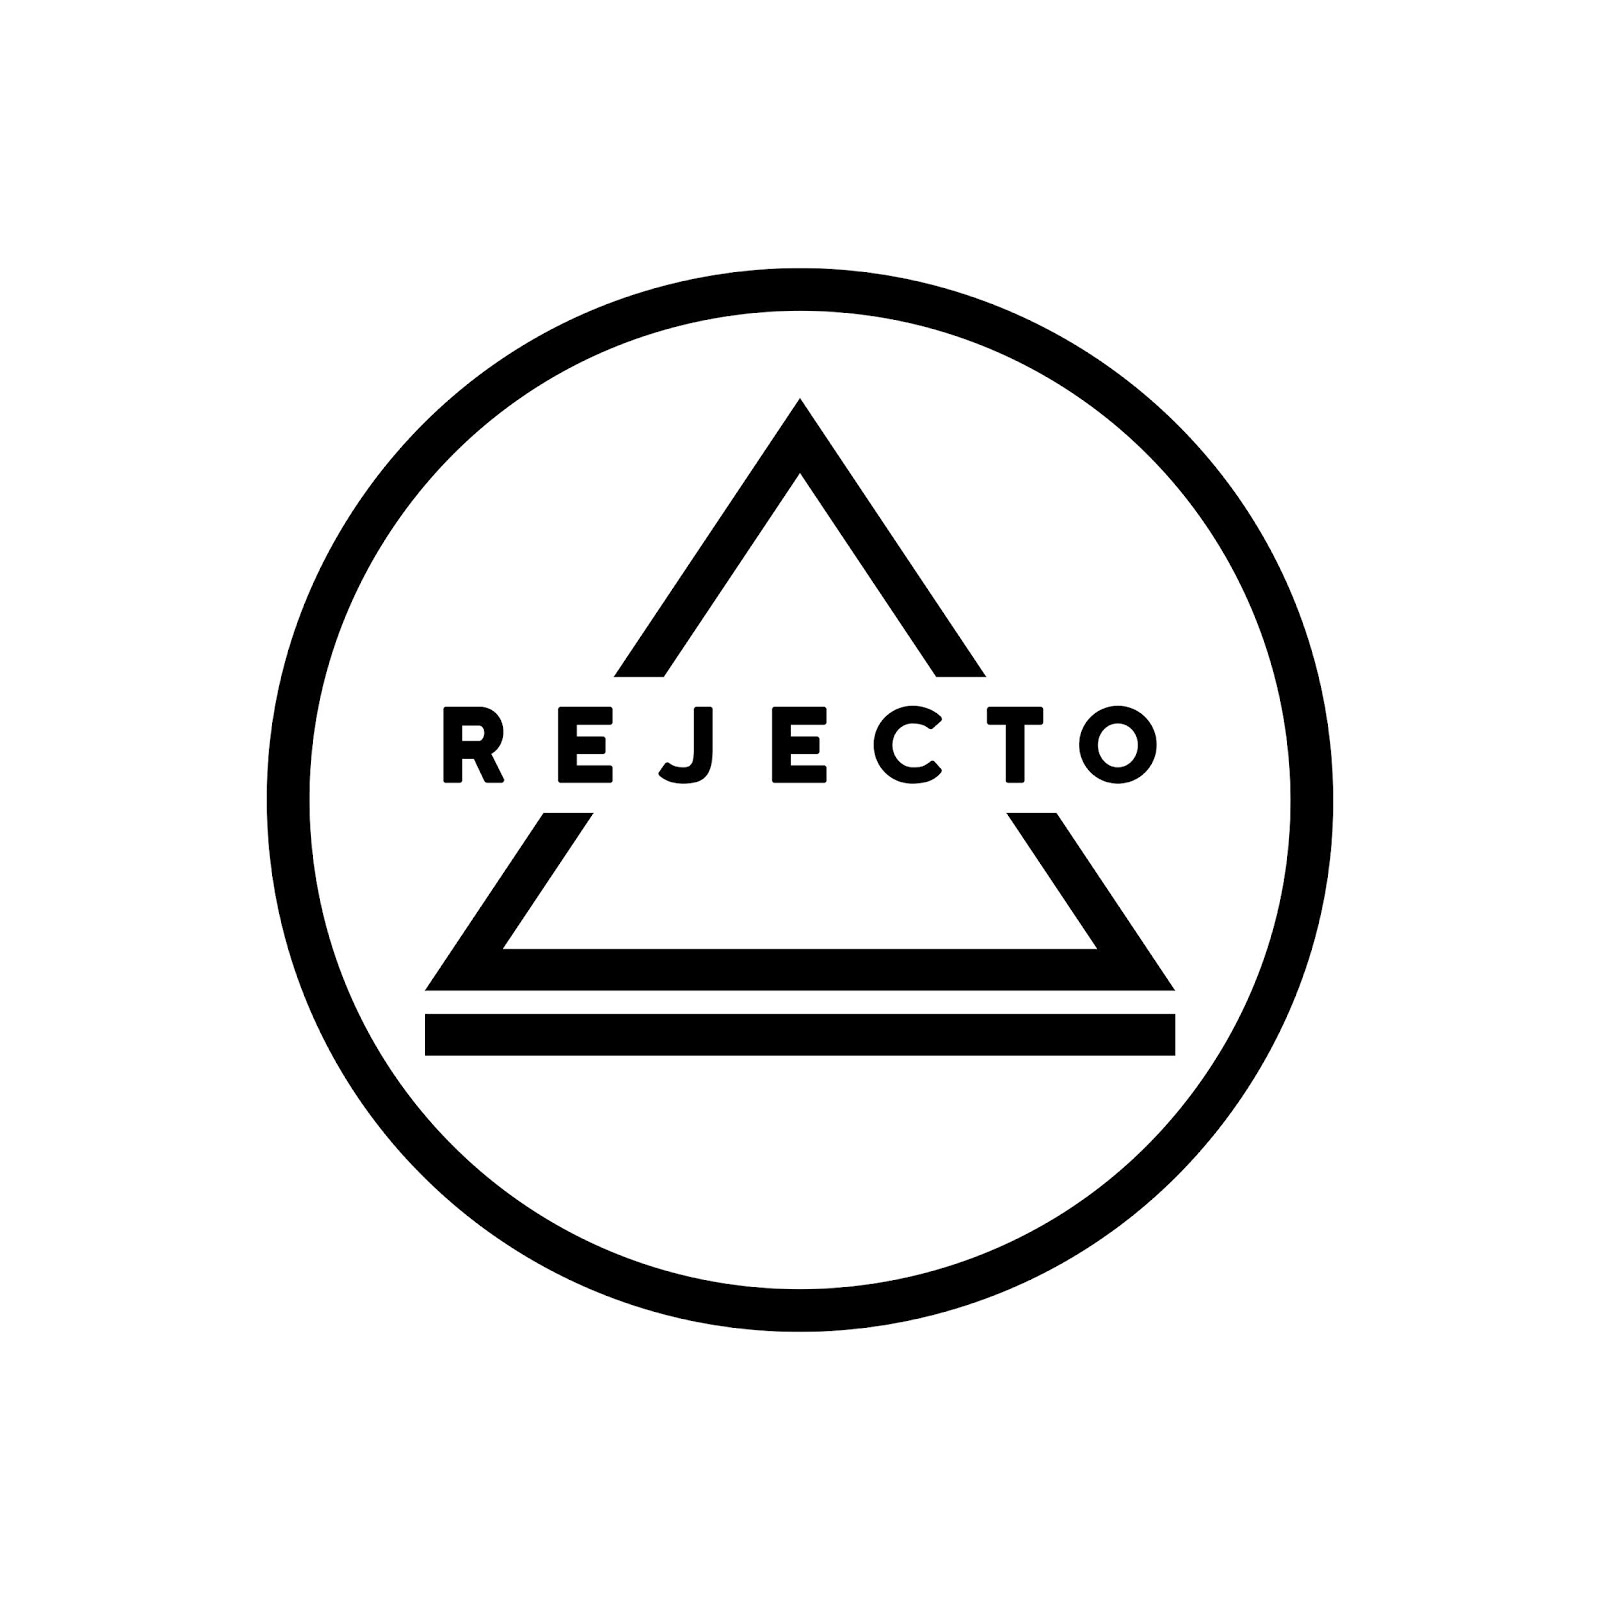 Rejecto “Lezioni di economia” il nuovo capitolo del progetto discografico dell’artista senza volto